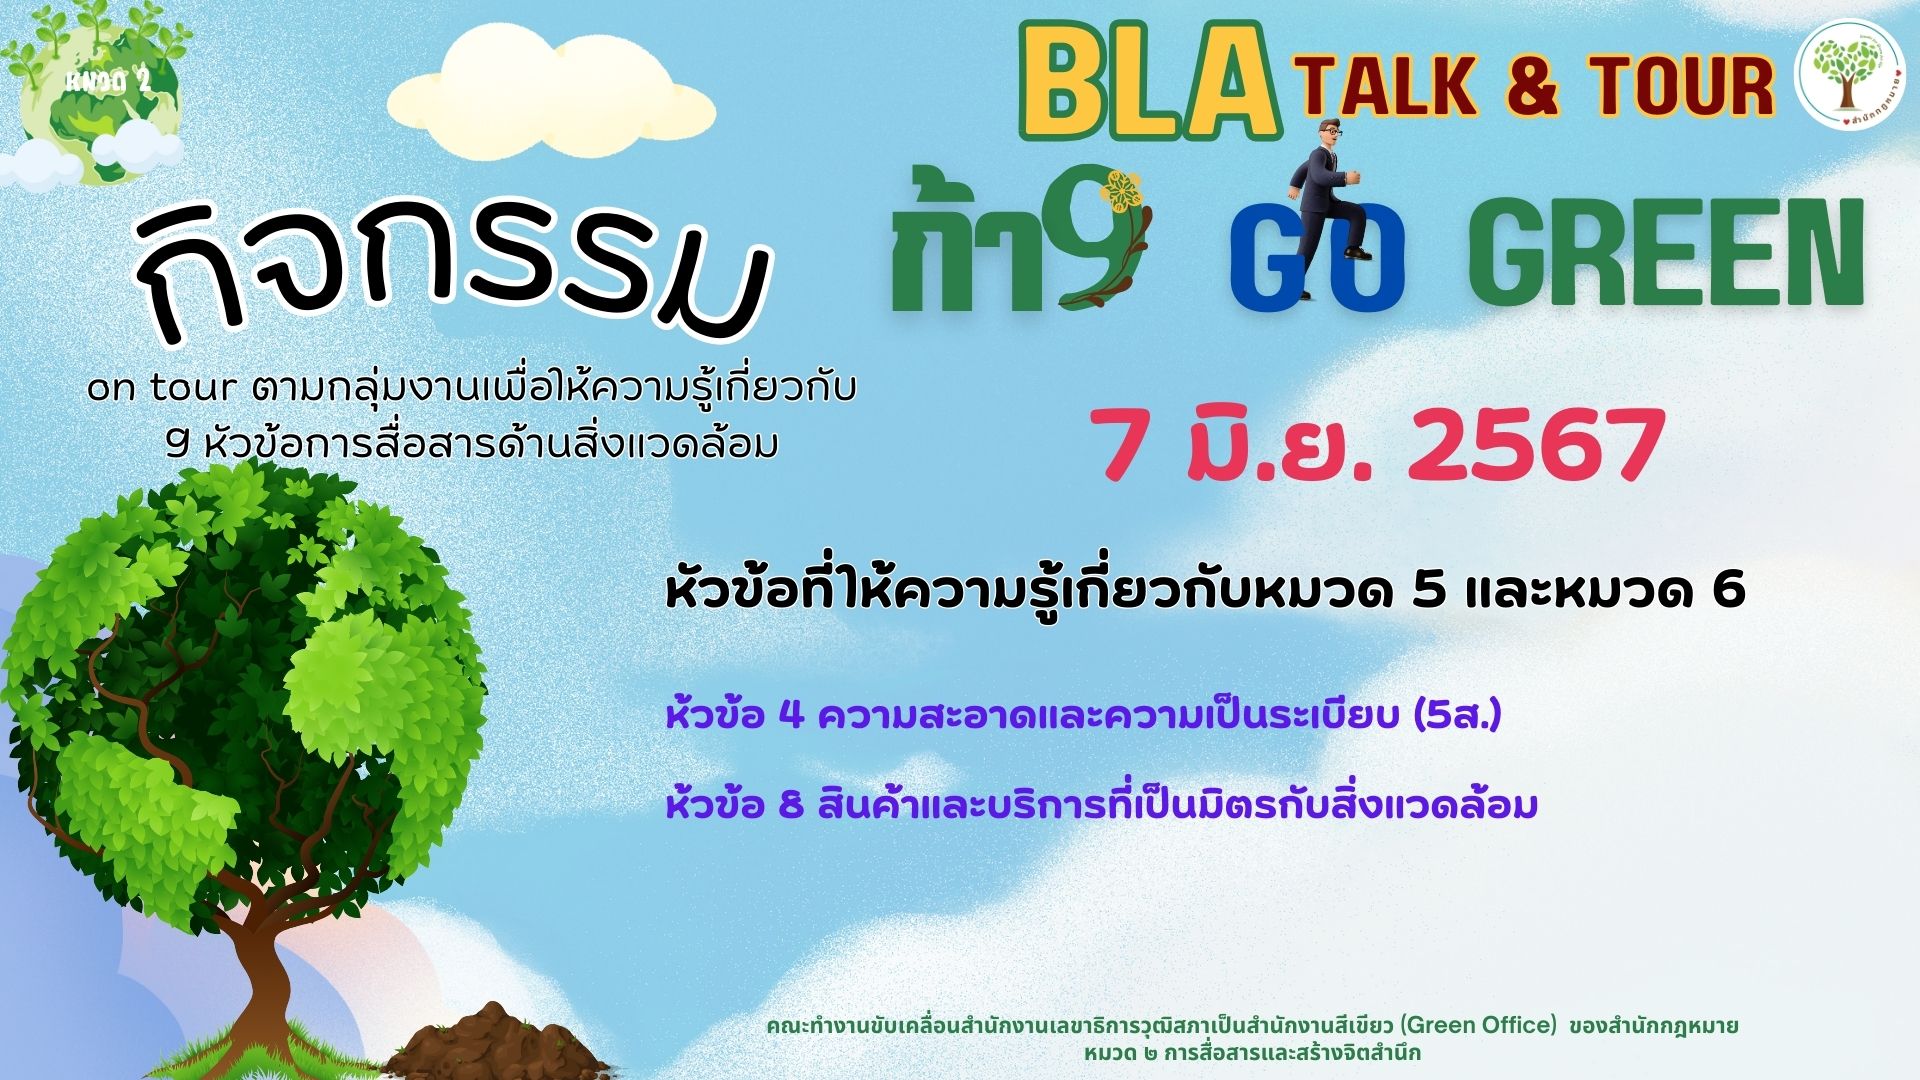 กิจกรรม BLA Talk & Tour ก้าว Go Green ครั้งที่ 3